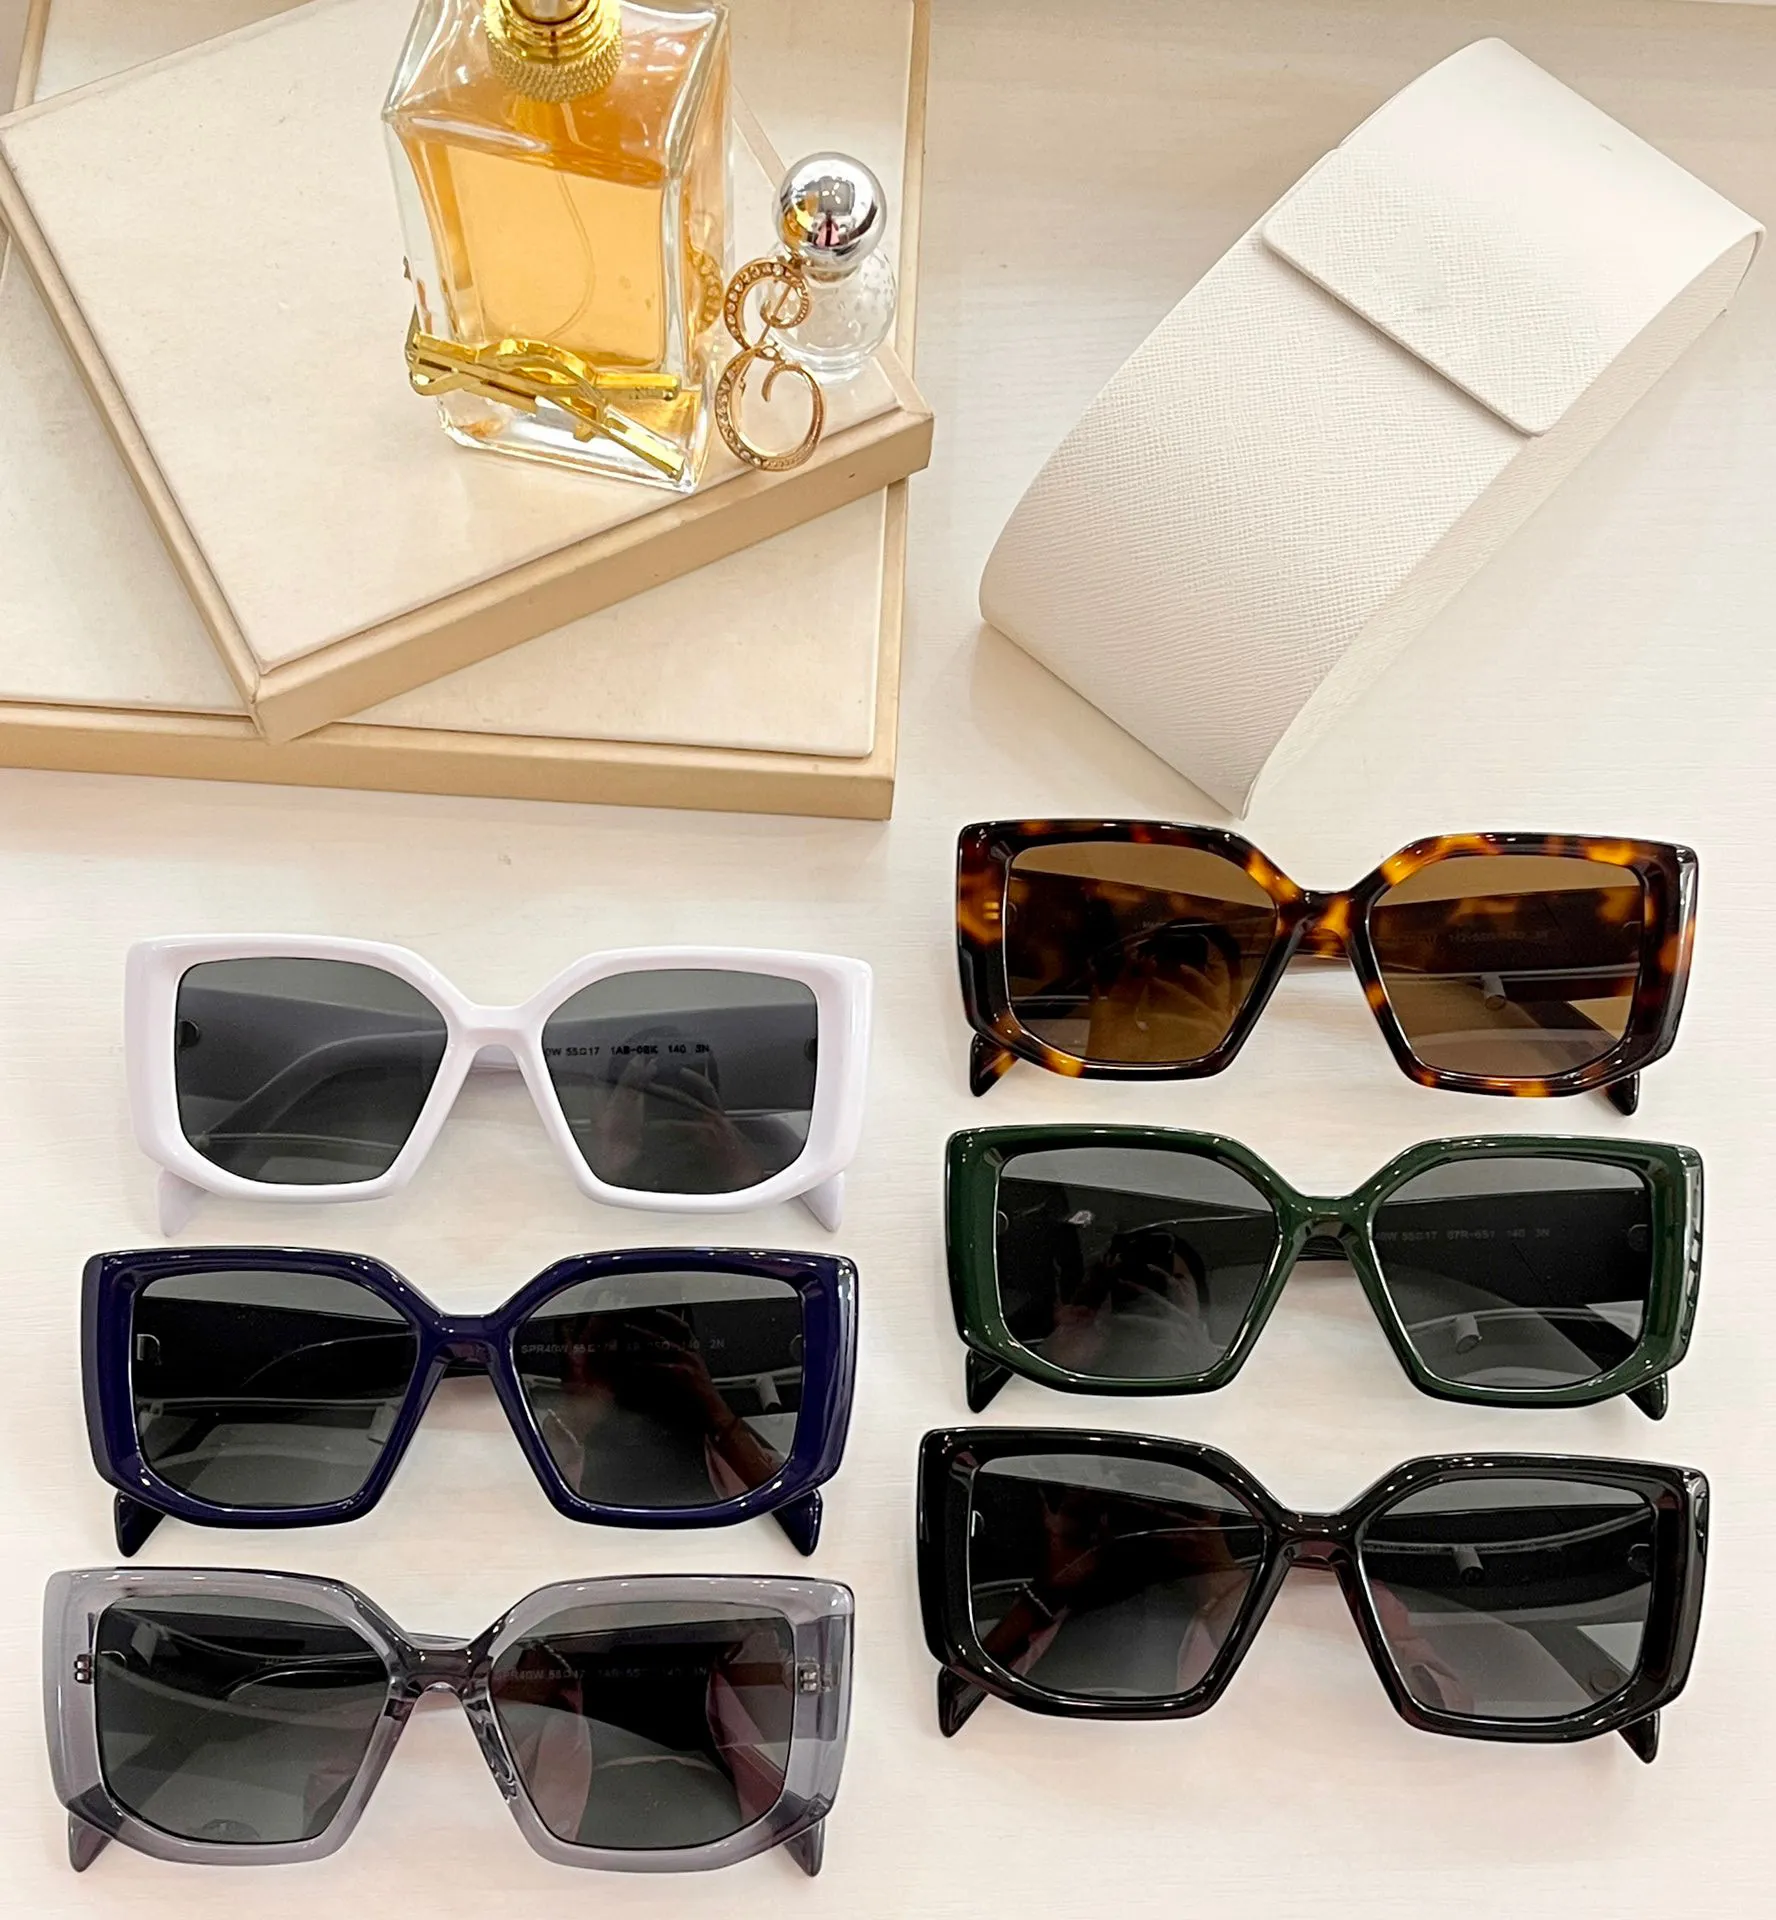 Óculos de sol feminino para homens e mulheres, óculos de sol masculino 40w, estilo fashion, protege os olhos, lente uv400, qualidade superior com backaging270g aleatório